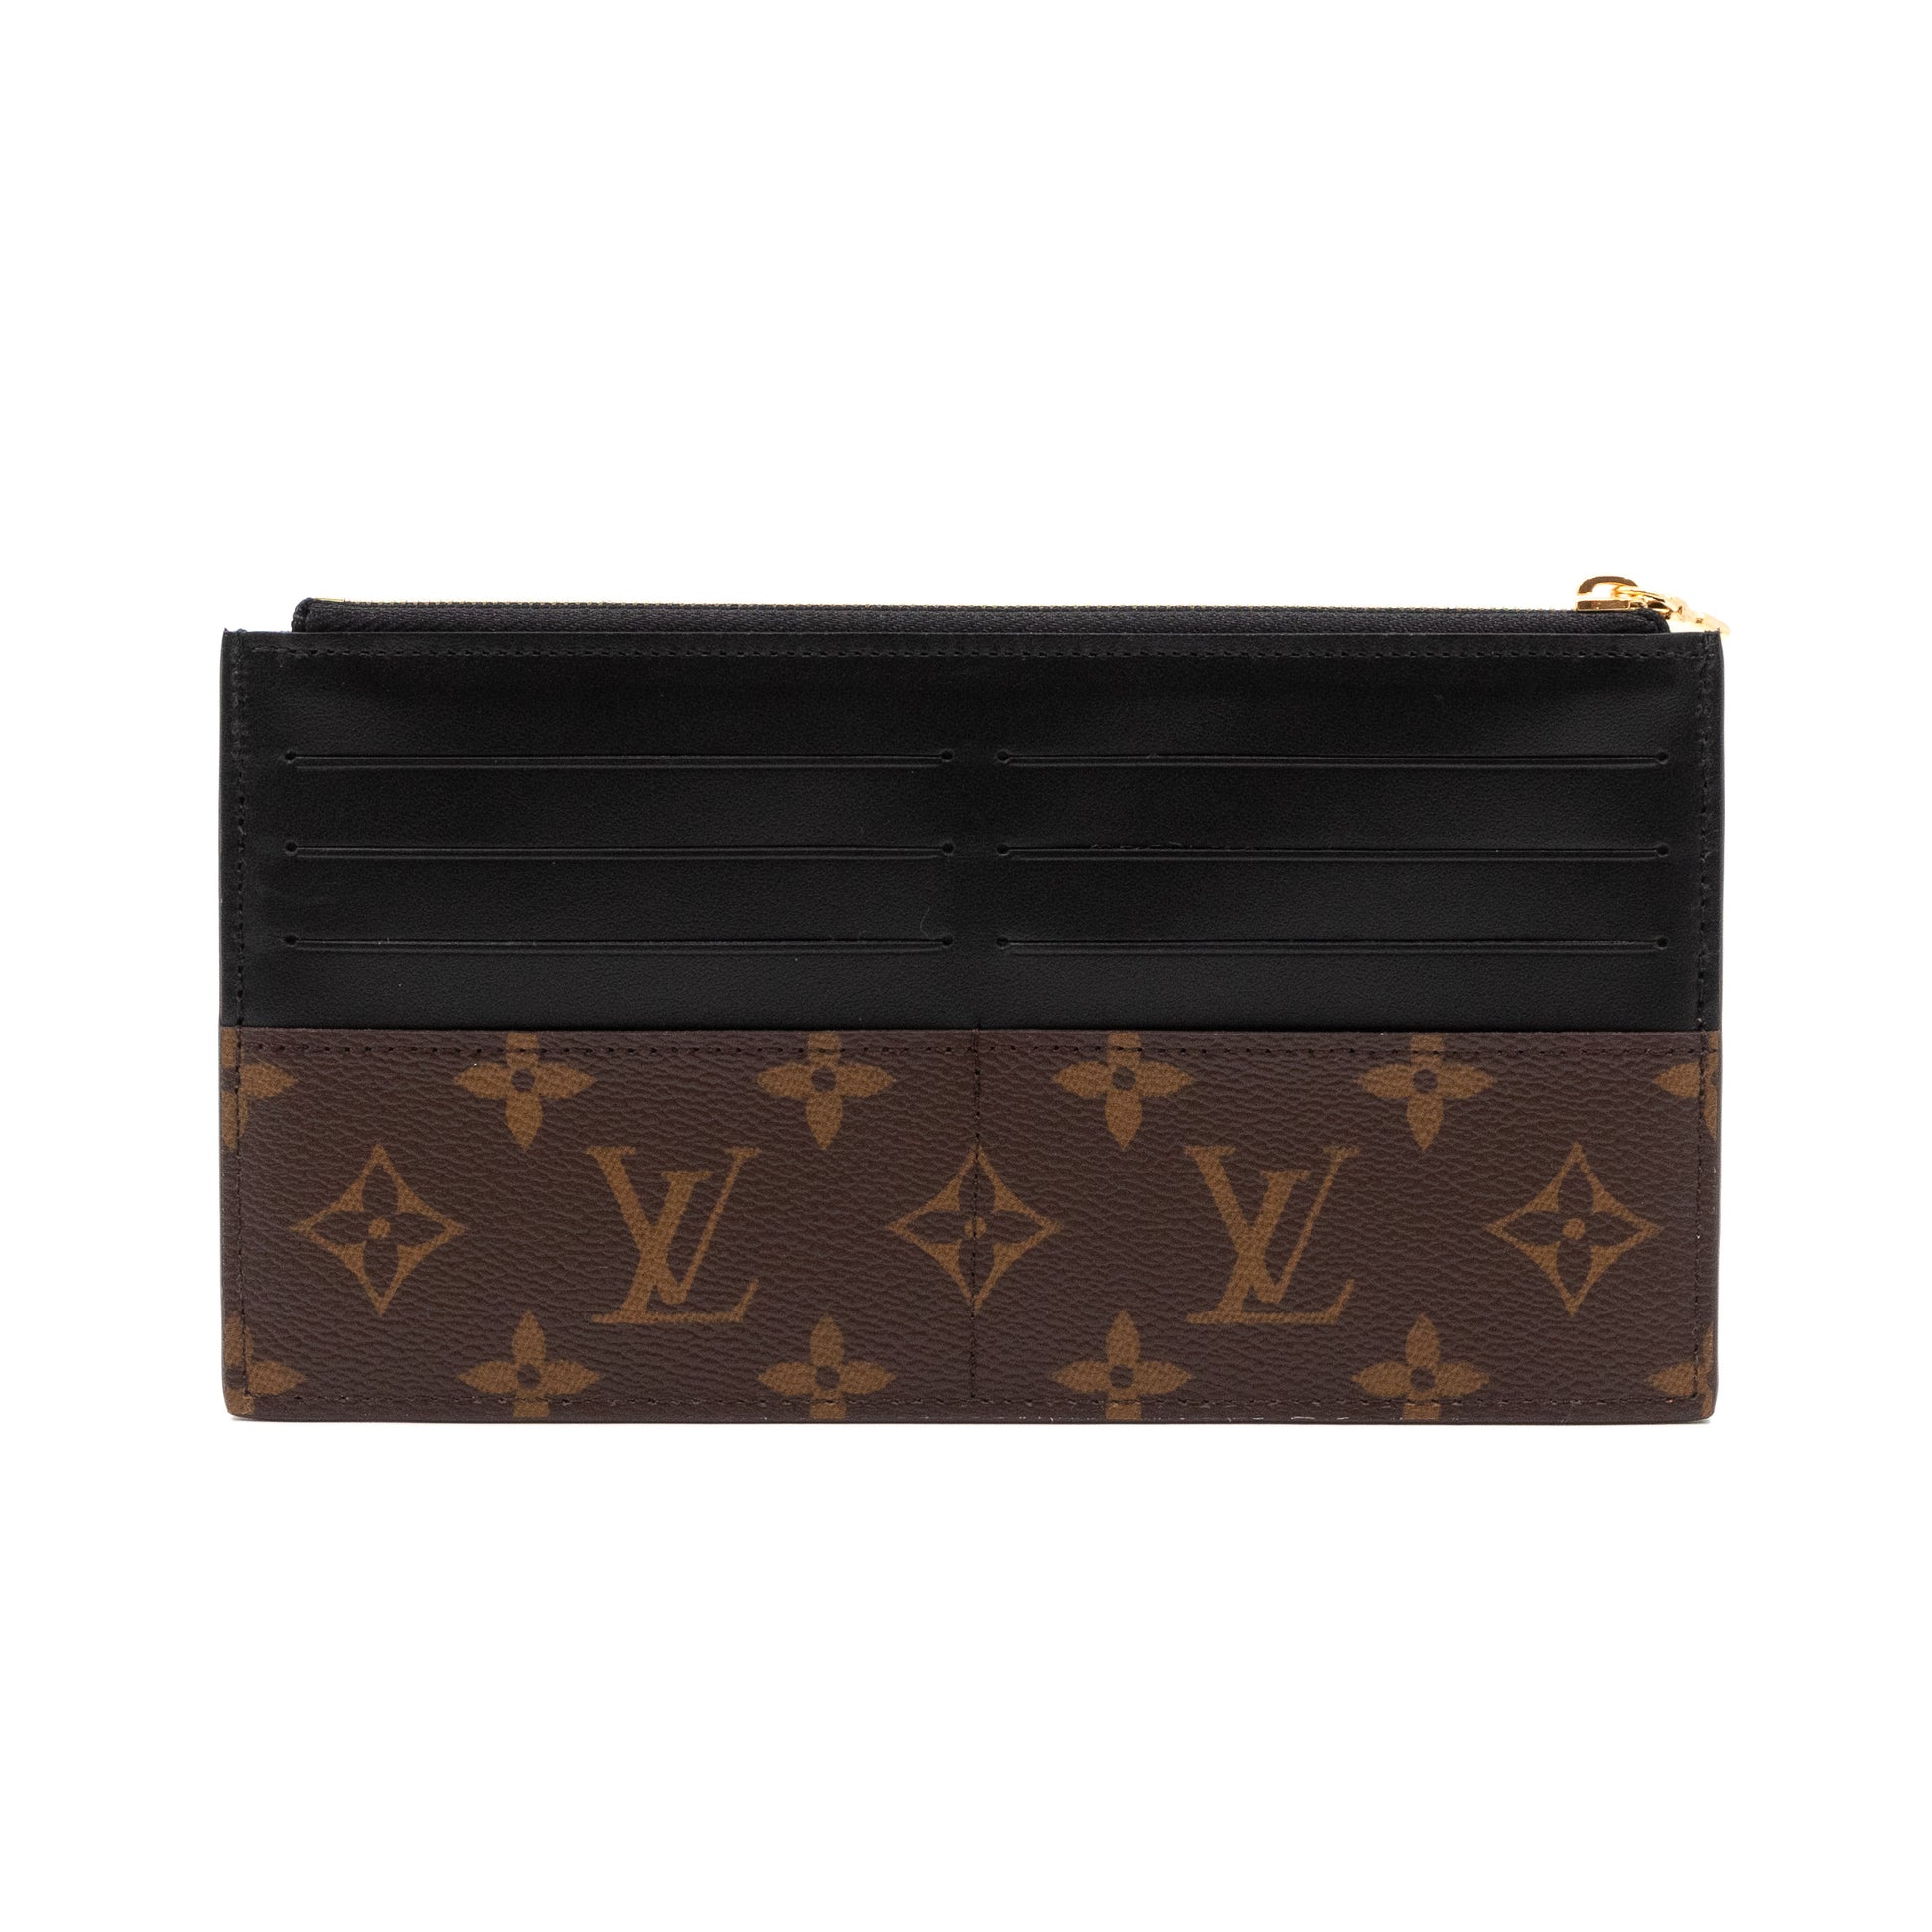 Shop Louis Vuitton MONOGRAM Slim purse by Channeltotheworld